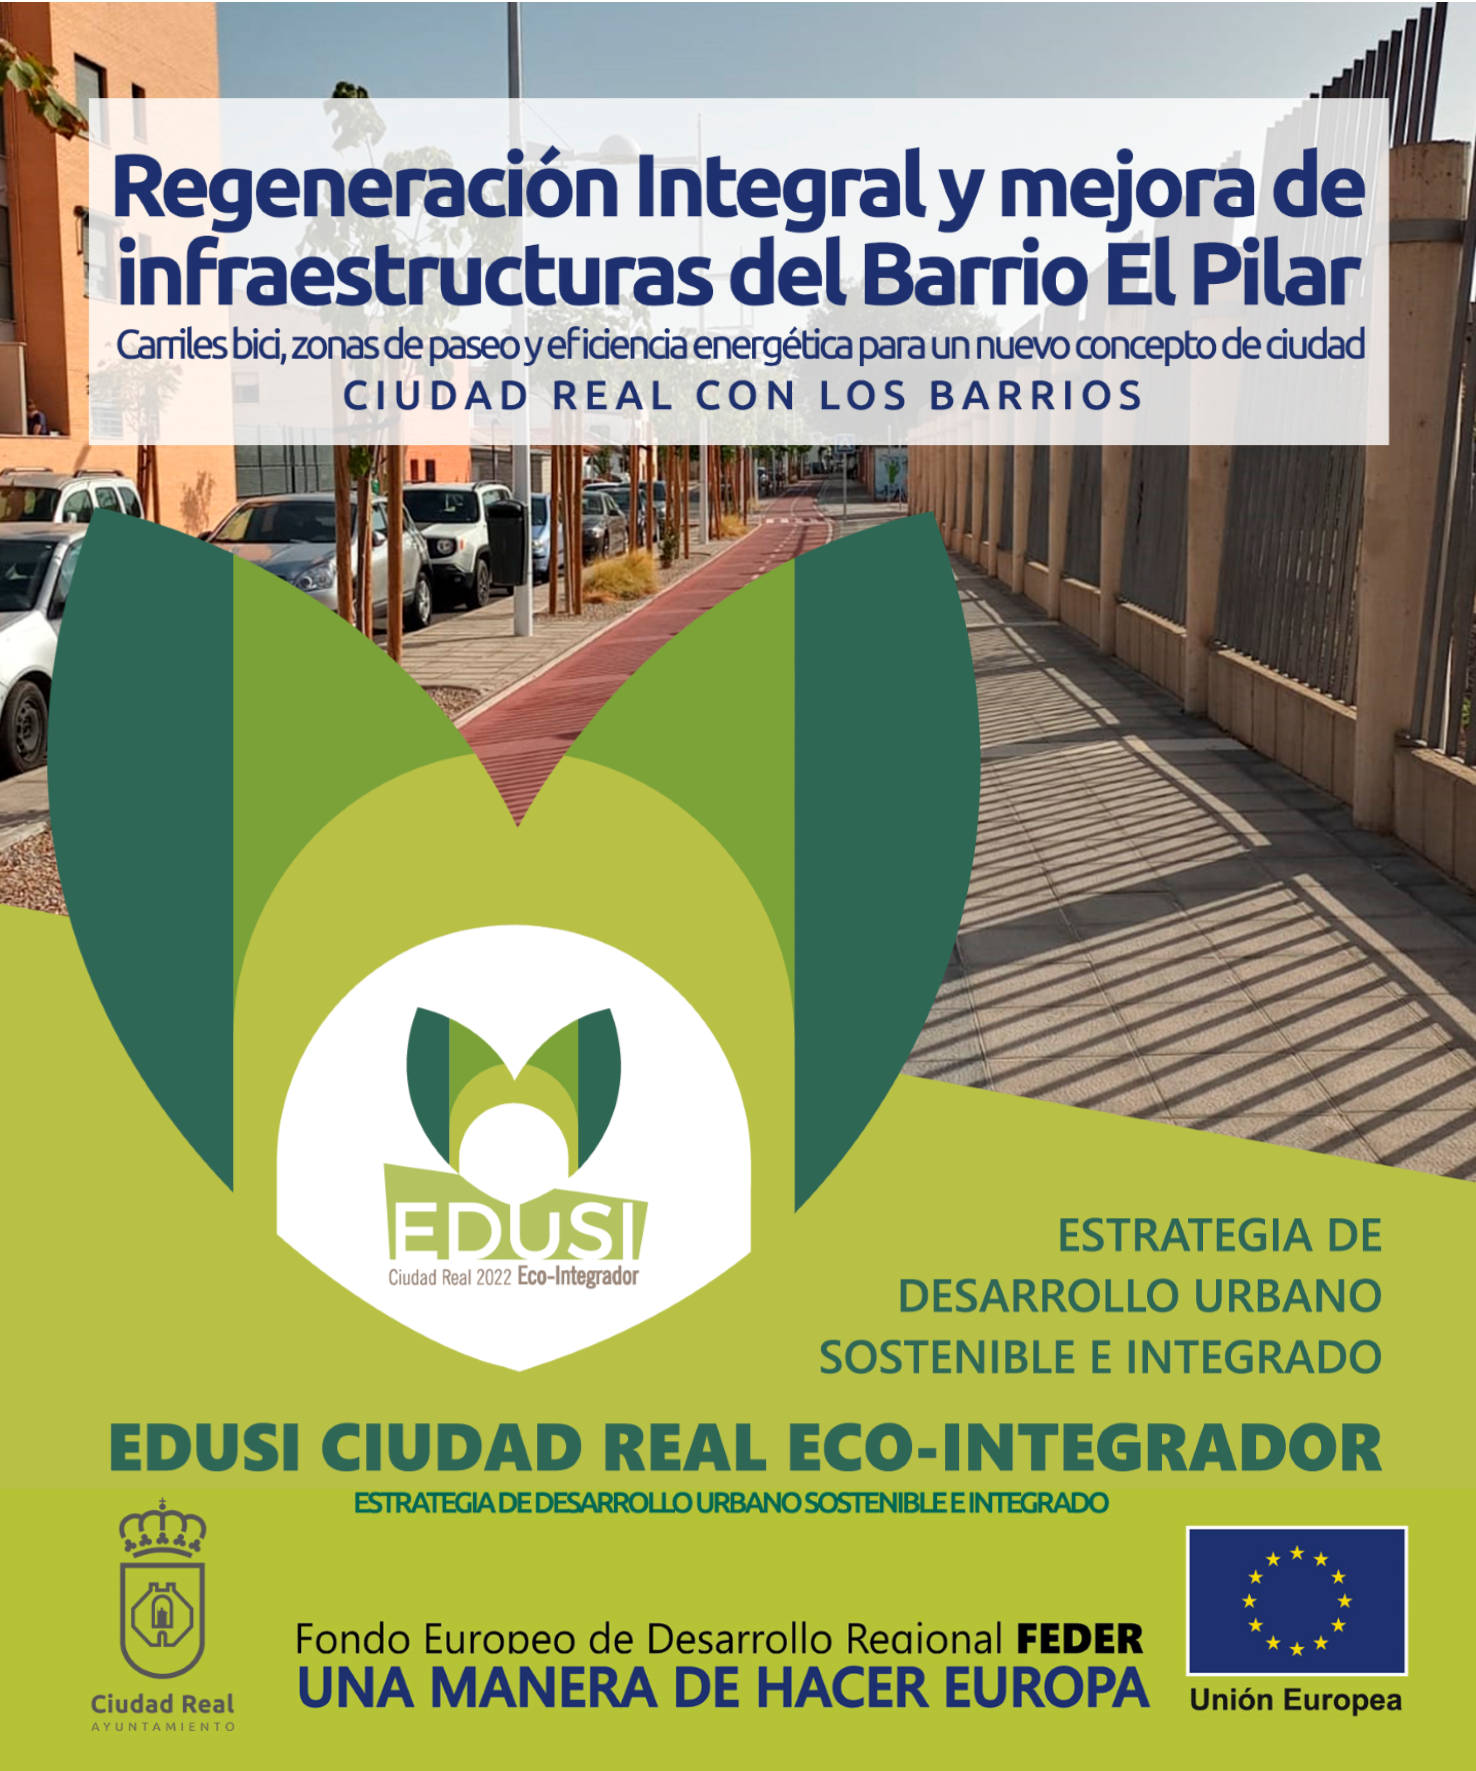 Regeneración integral y mejoras de infraestructuras del Barrio El Pilar - Ciudad Real